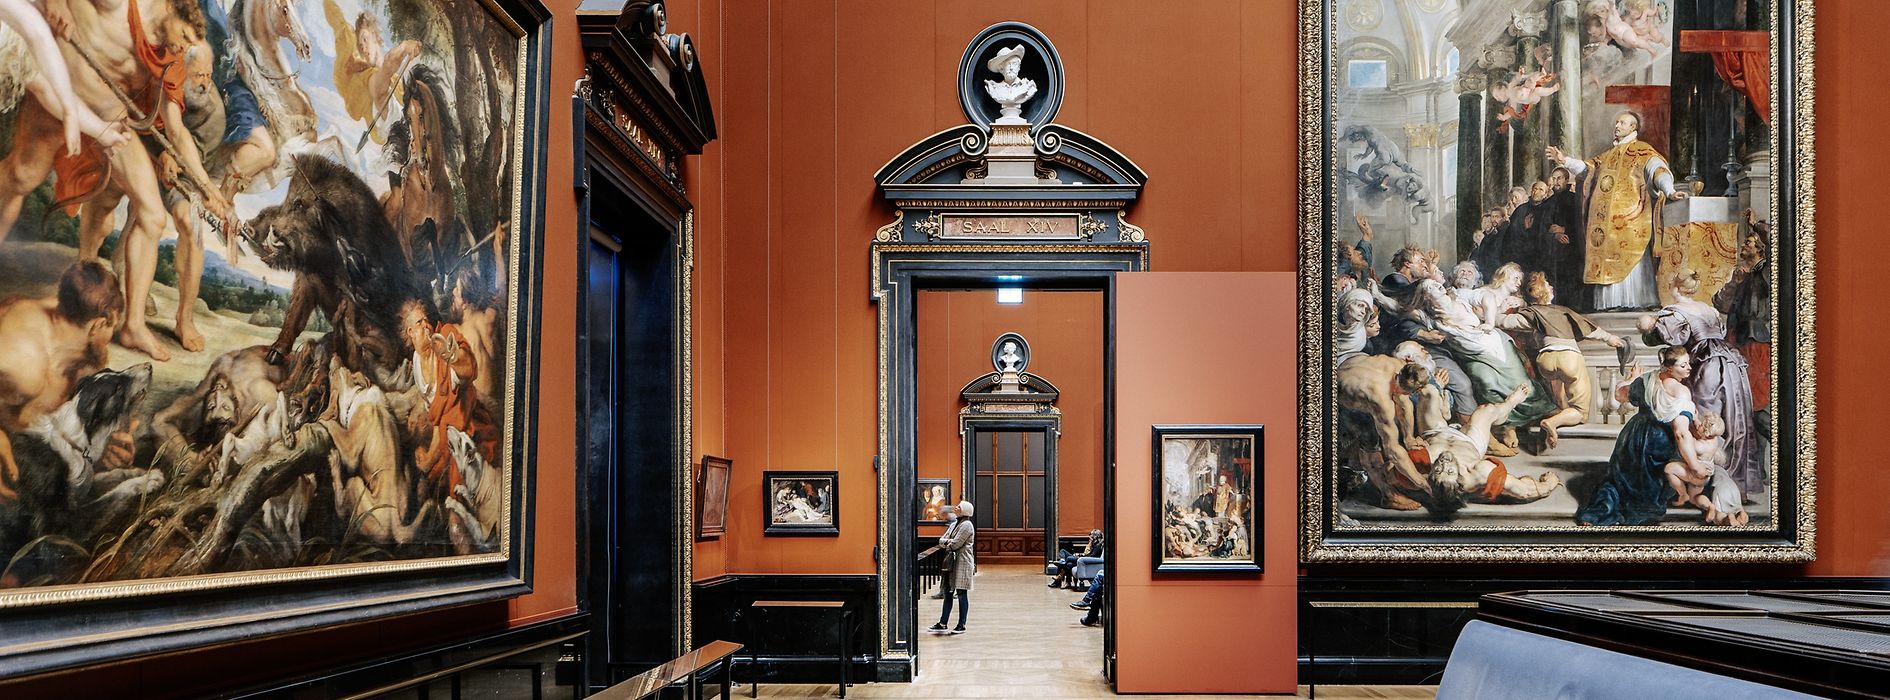 Uměleckohistorické muzeum ve Vídni, výstavní prostor